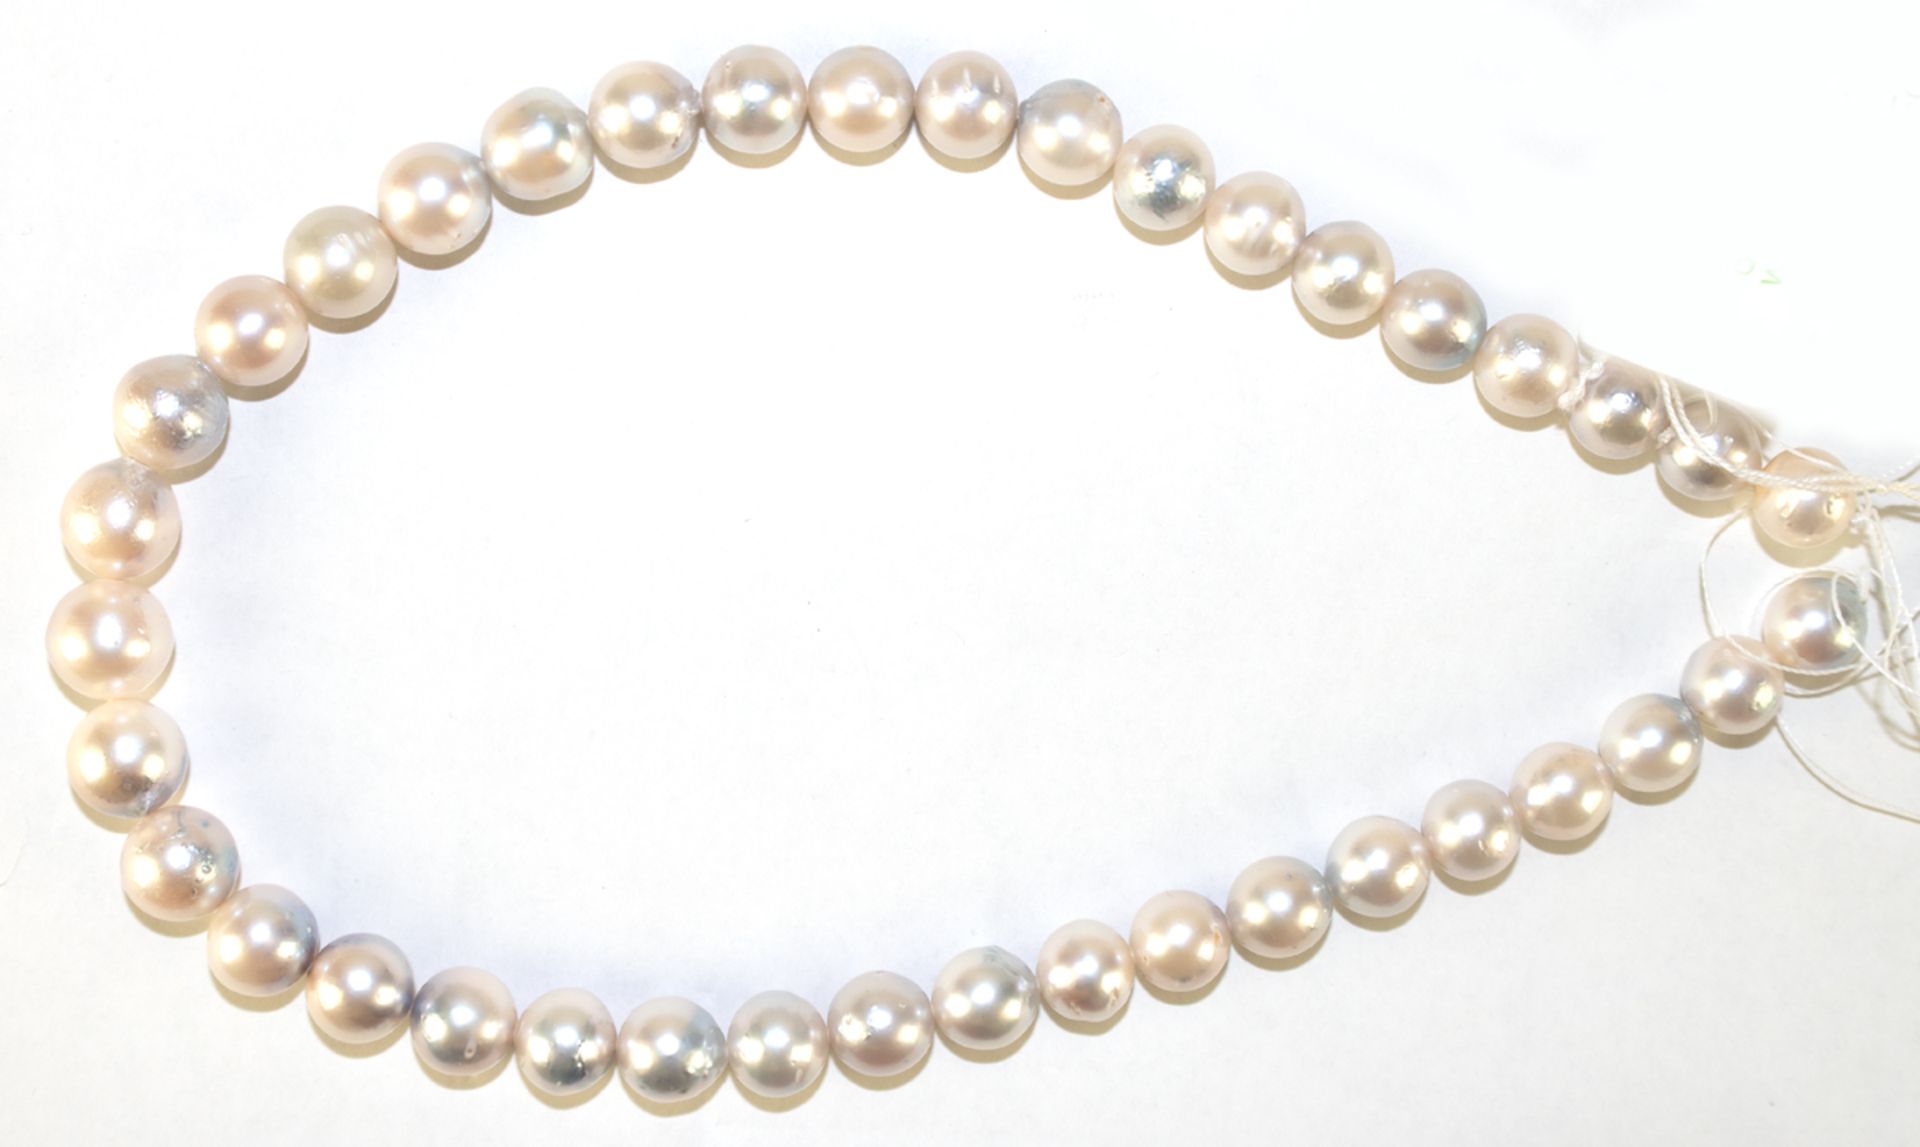 Südseeperlen-Strang, weiß-silbergrau mit natürlichen Wachstumsmerkmalen, Durchmesser der Perlen von